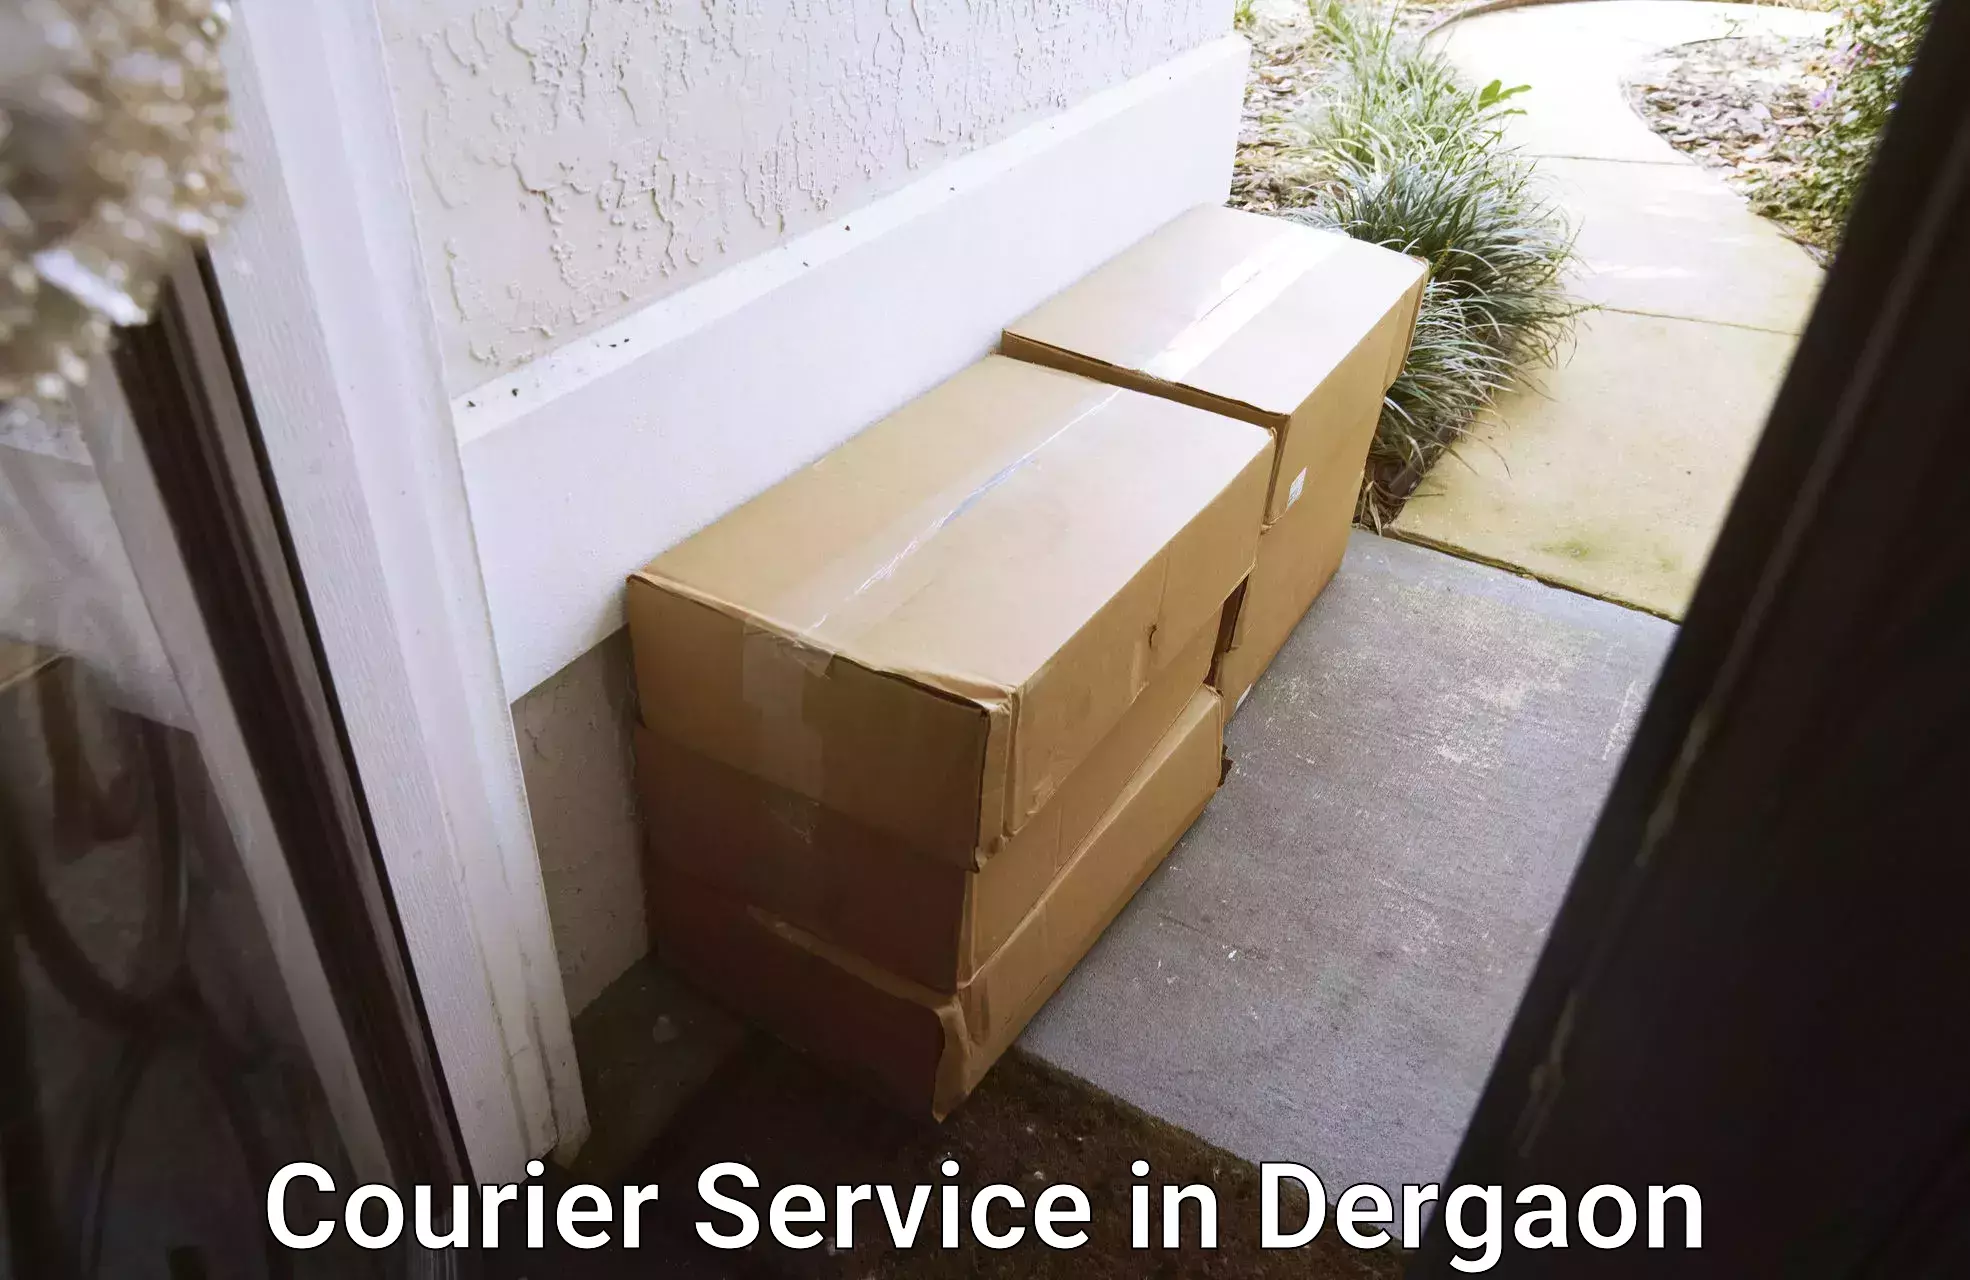 Next day courier in Dergaon